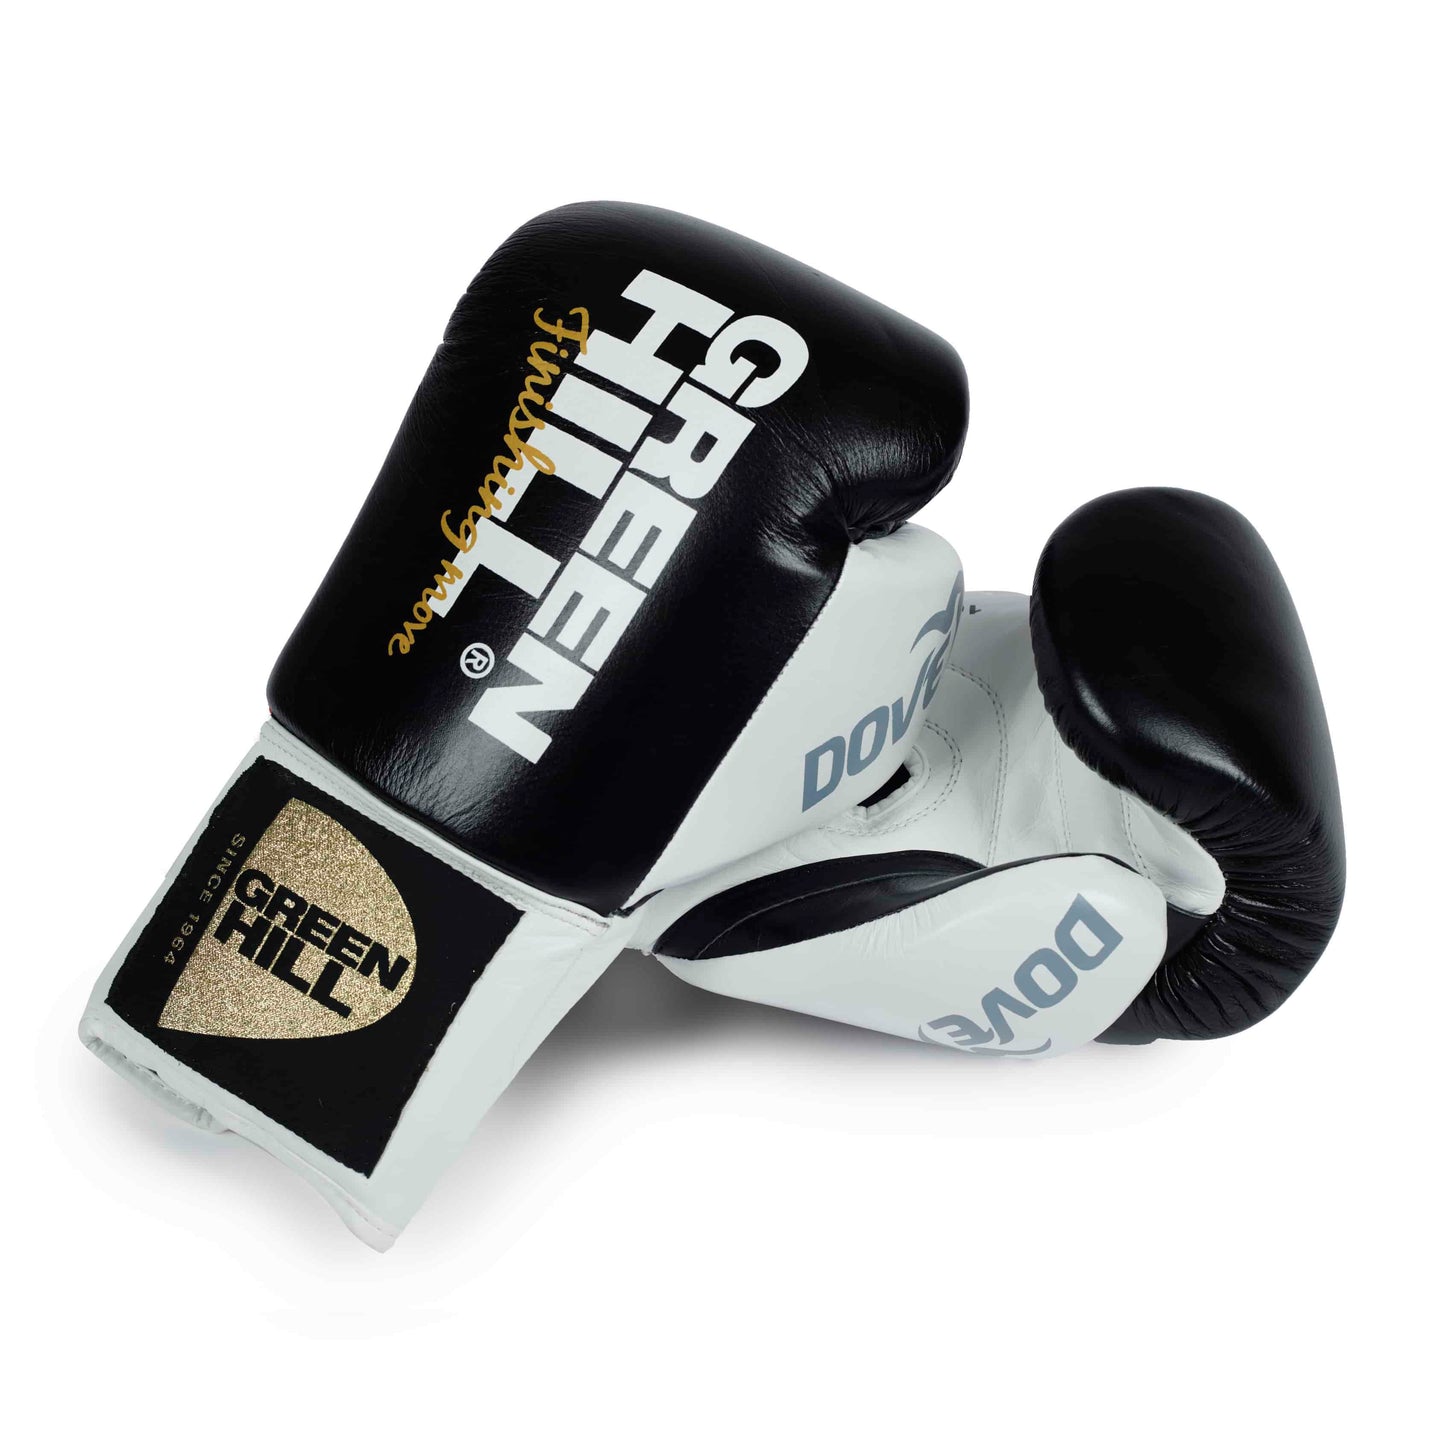 Boxing Gloves “Dove”